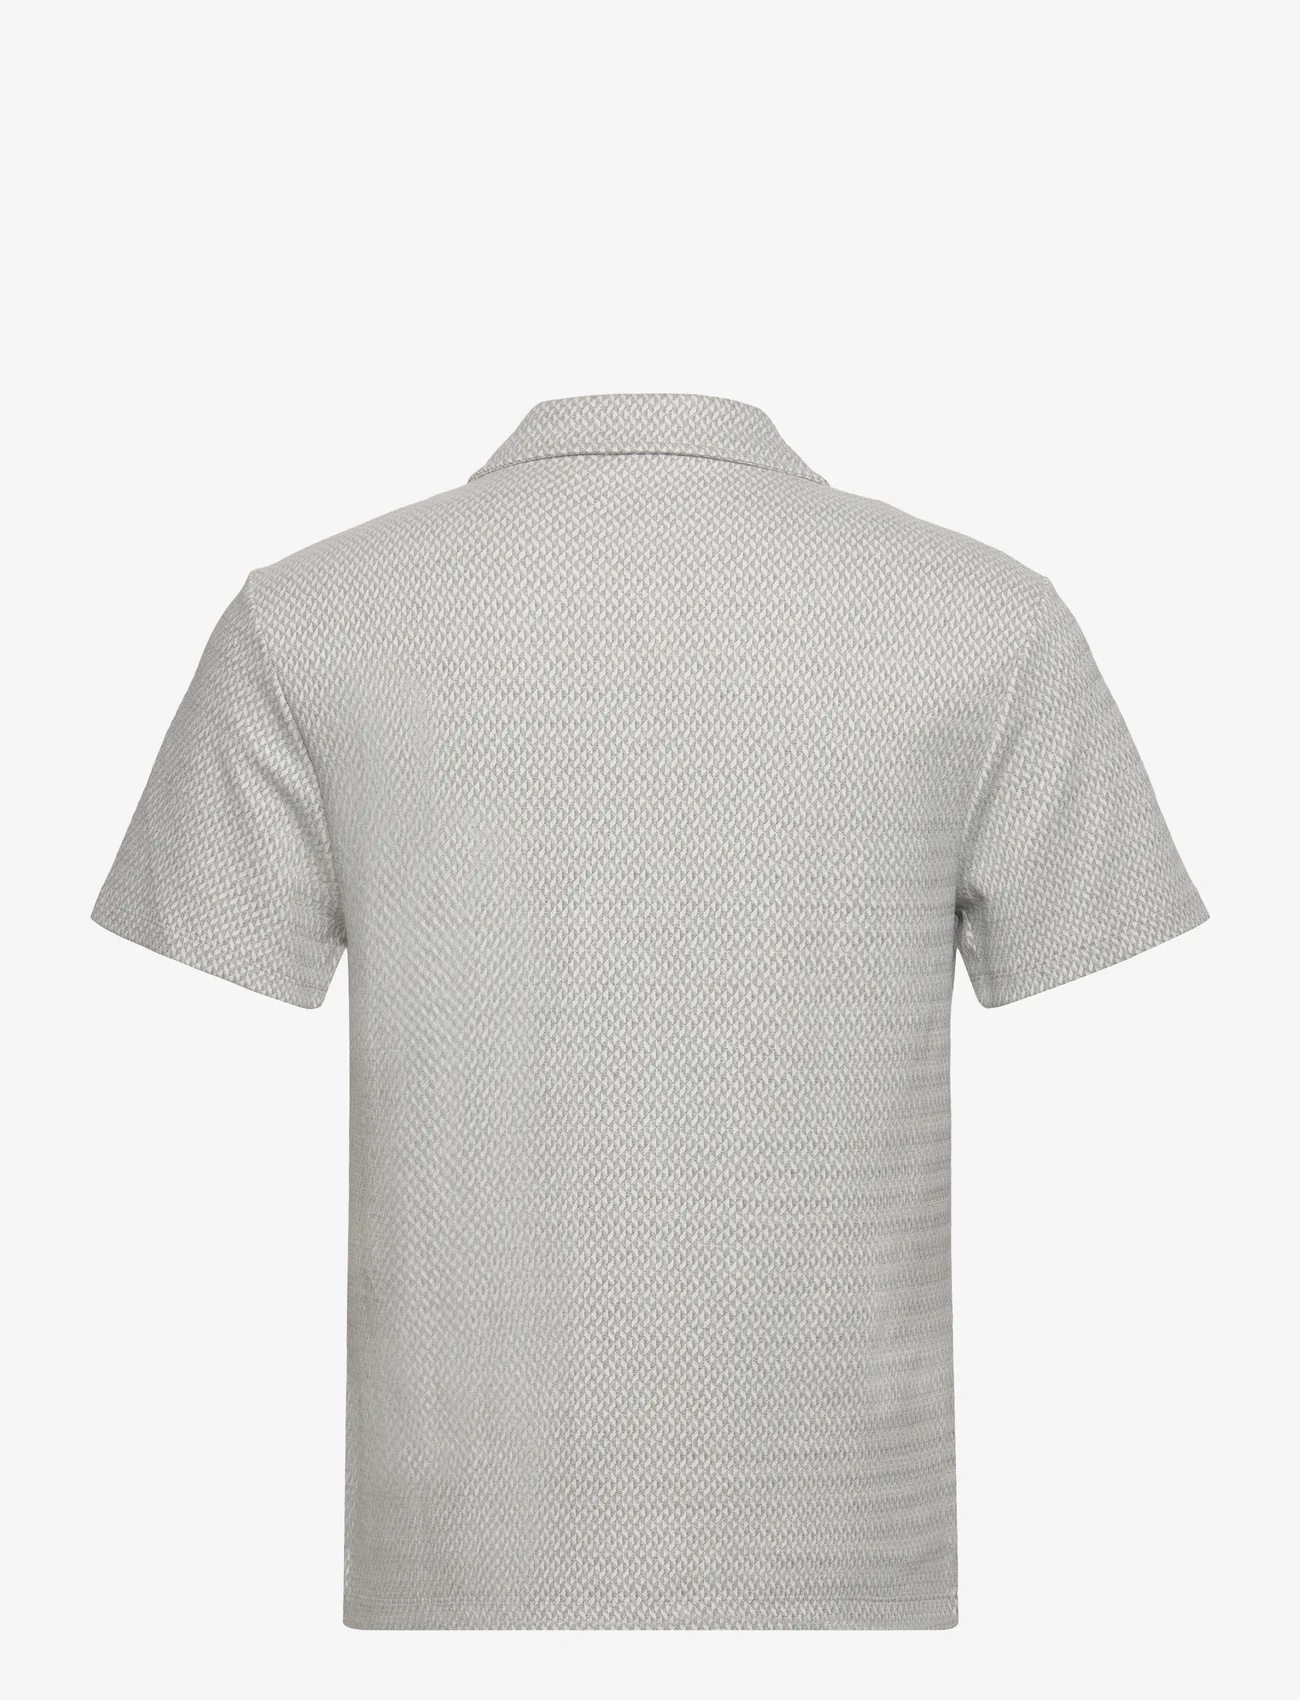 Reiss - BREWER - short-sleeved shirts - light grey - 1